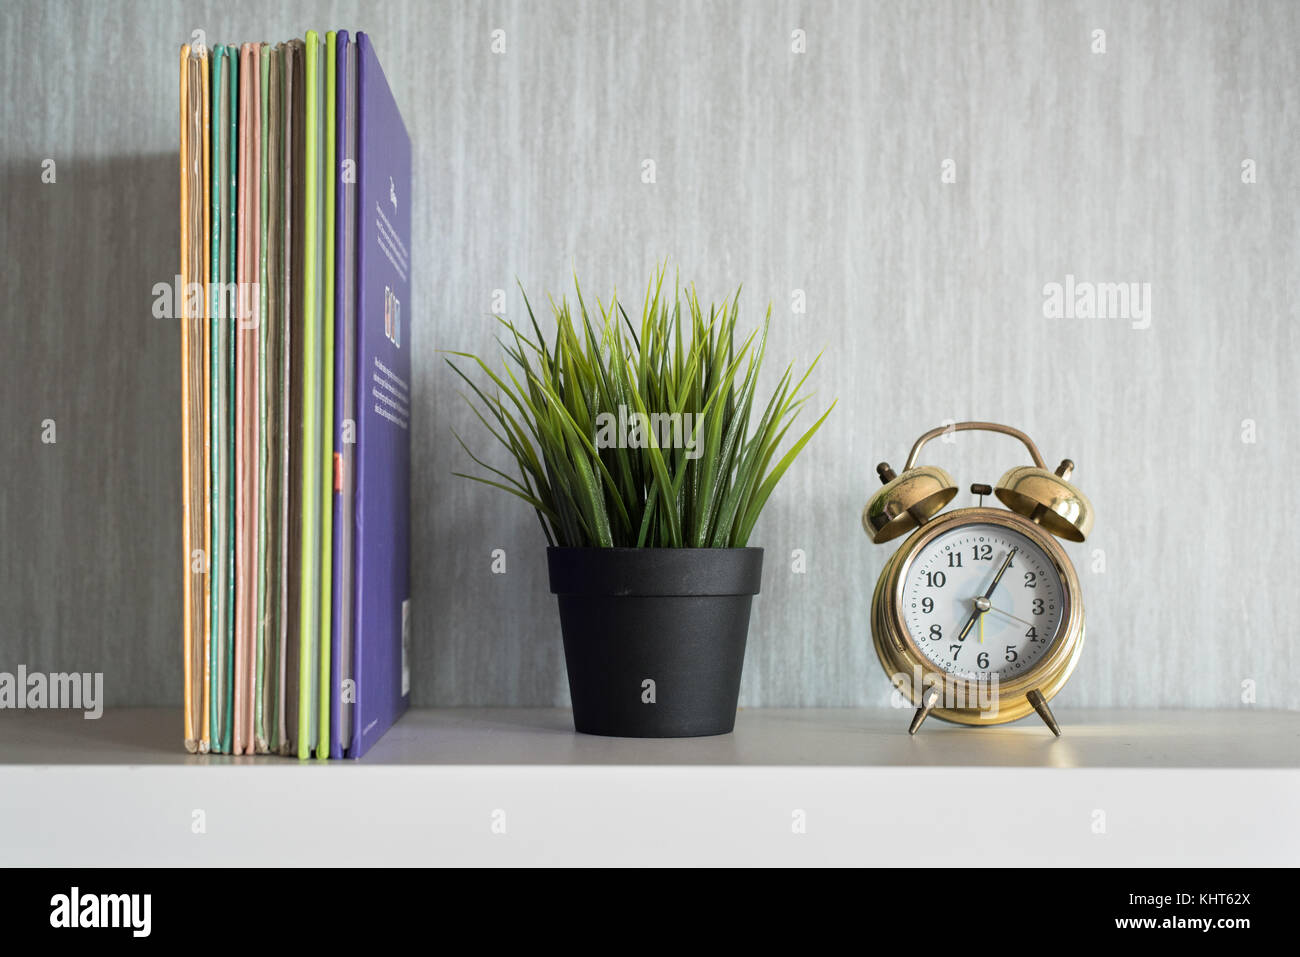 Encyclopedia libros, planta y reloj alarma sobre blanco estantería - concepto organizado Foto de stock